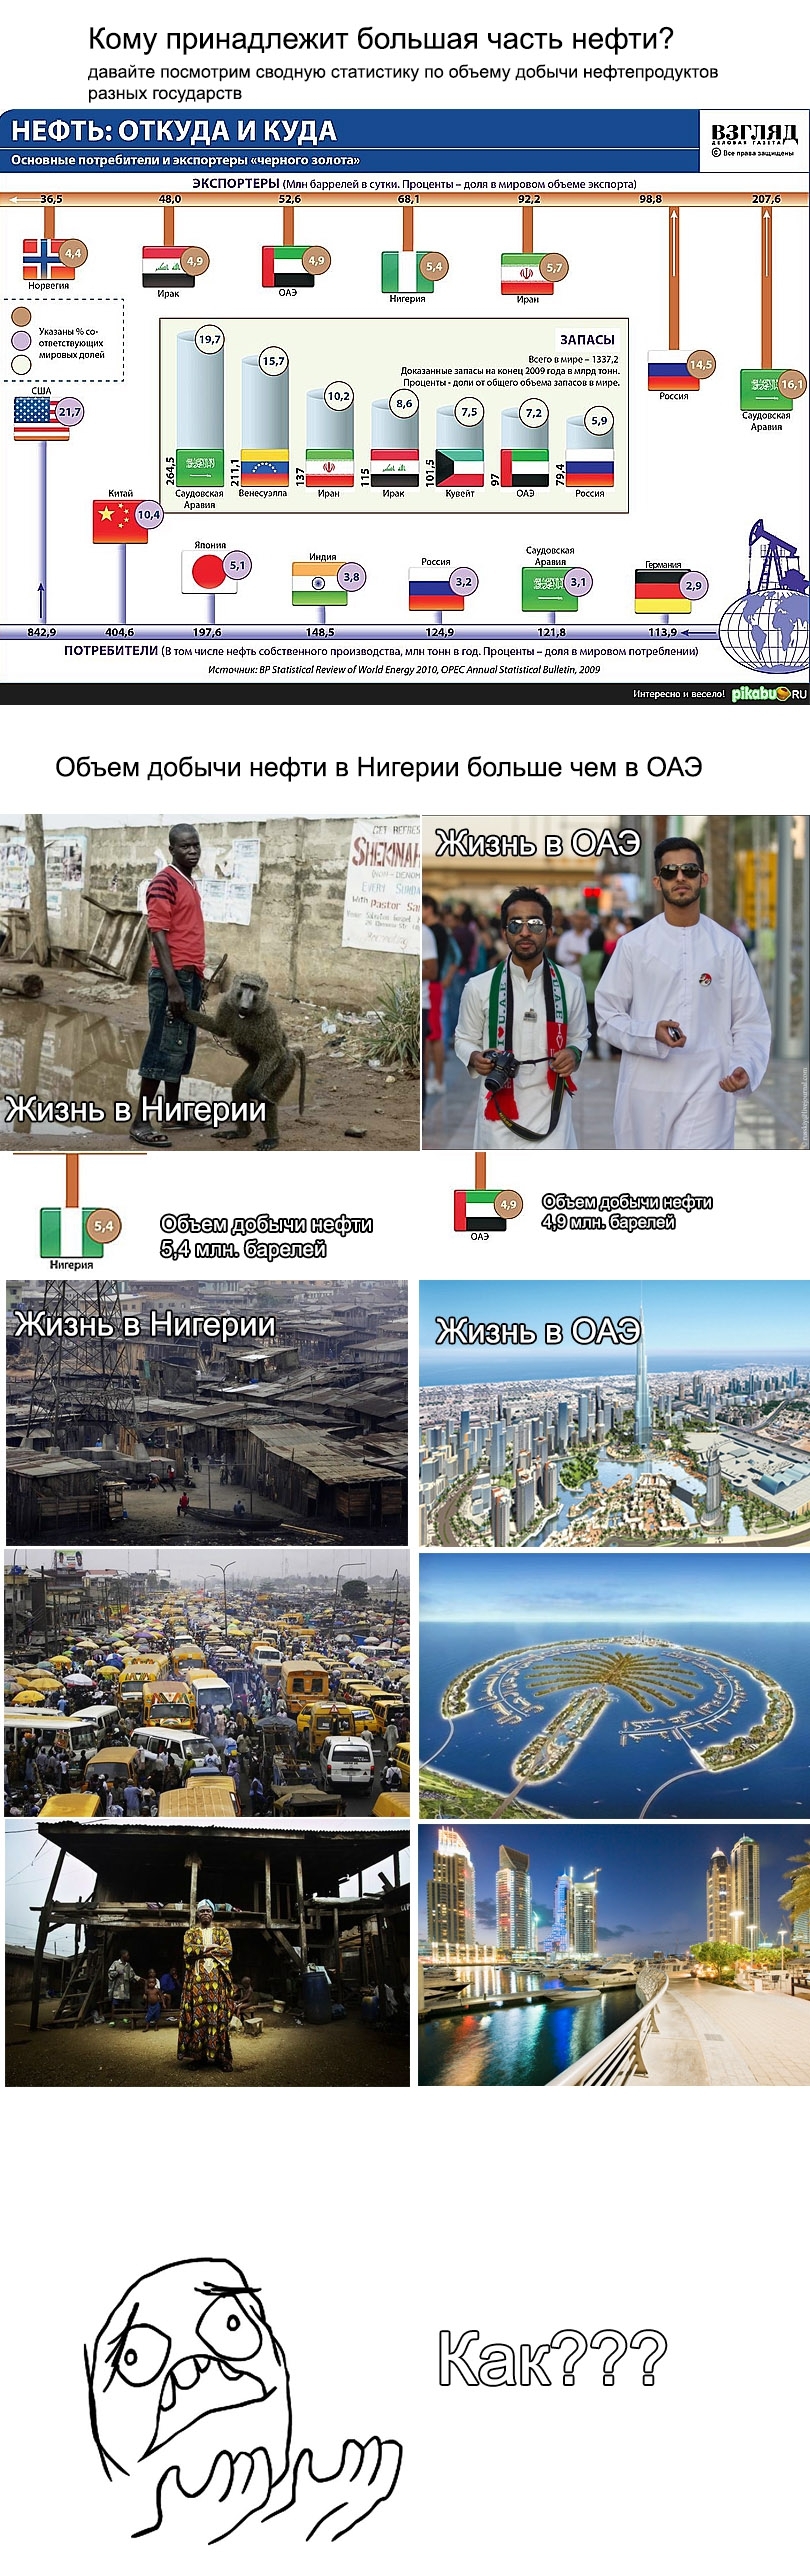 Жизнь в ОАЭ и Нигерии. Экономический парадокс.